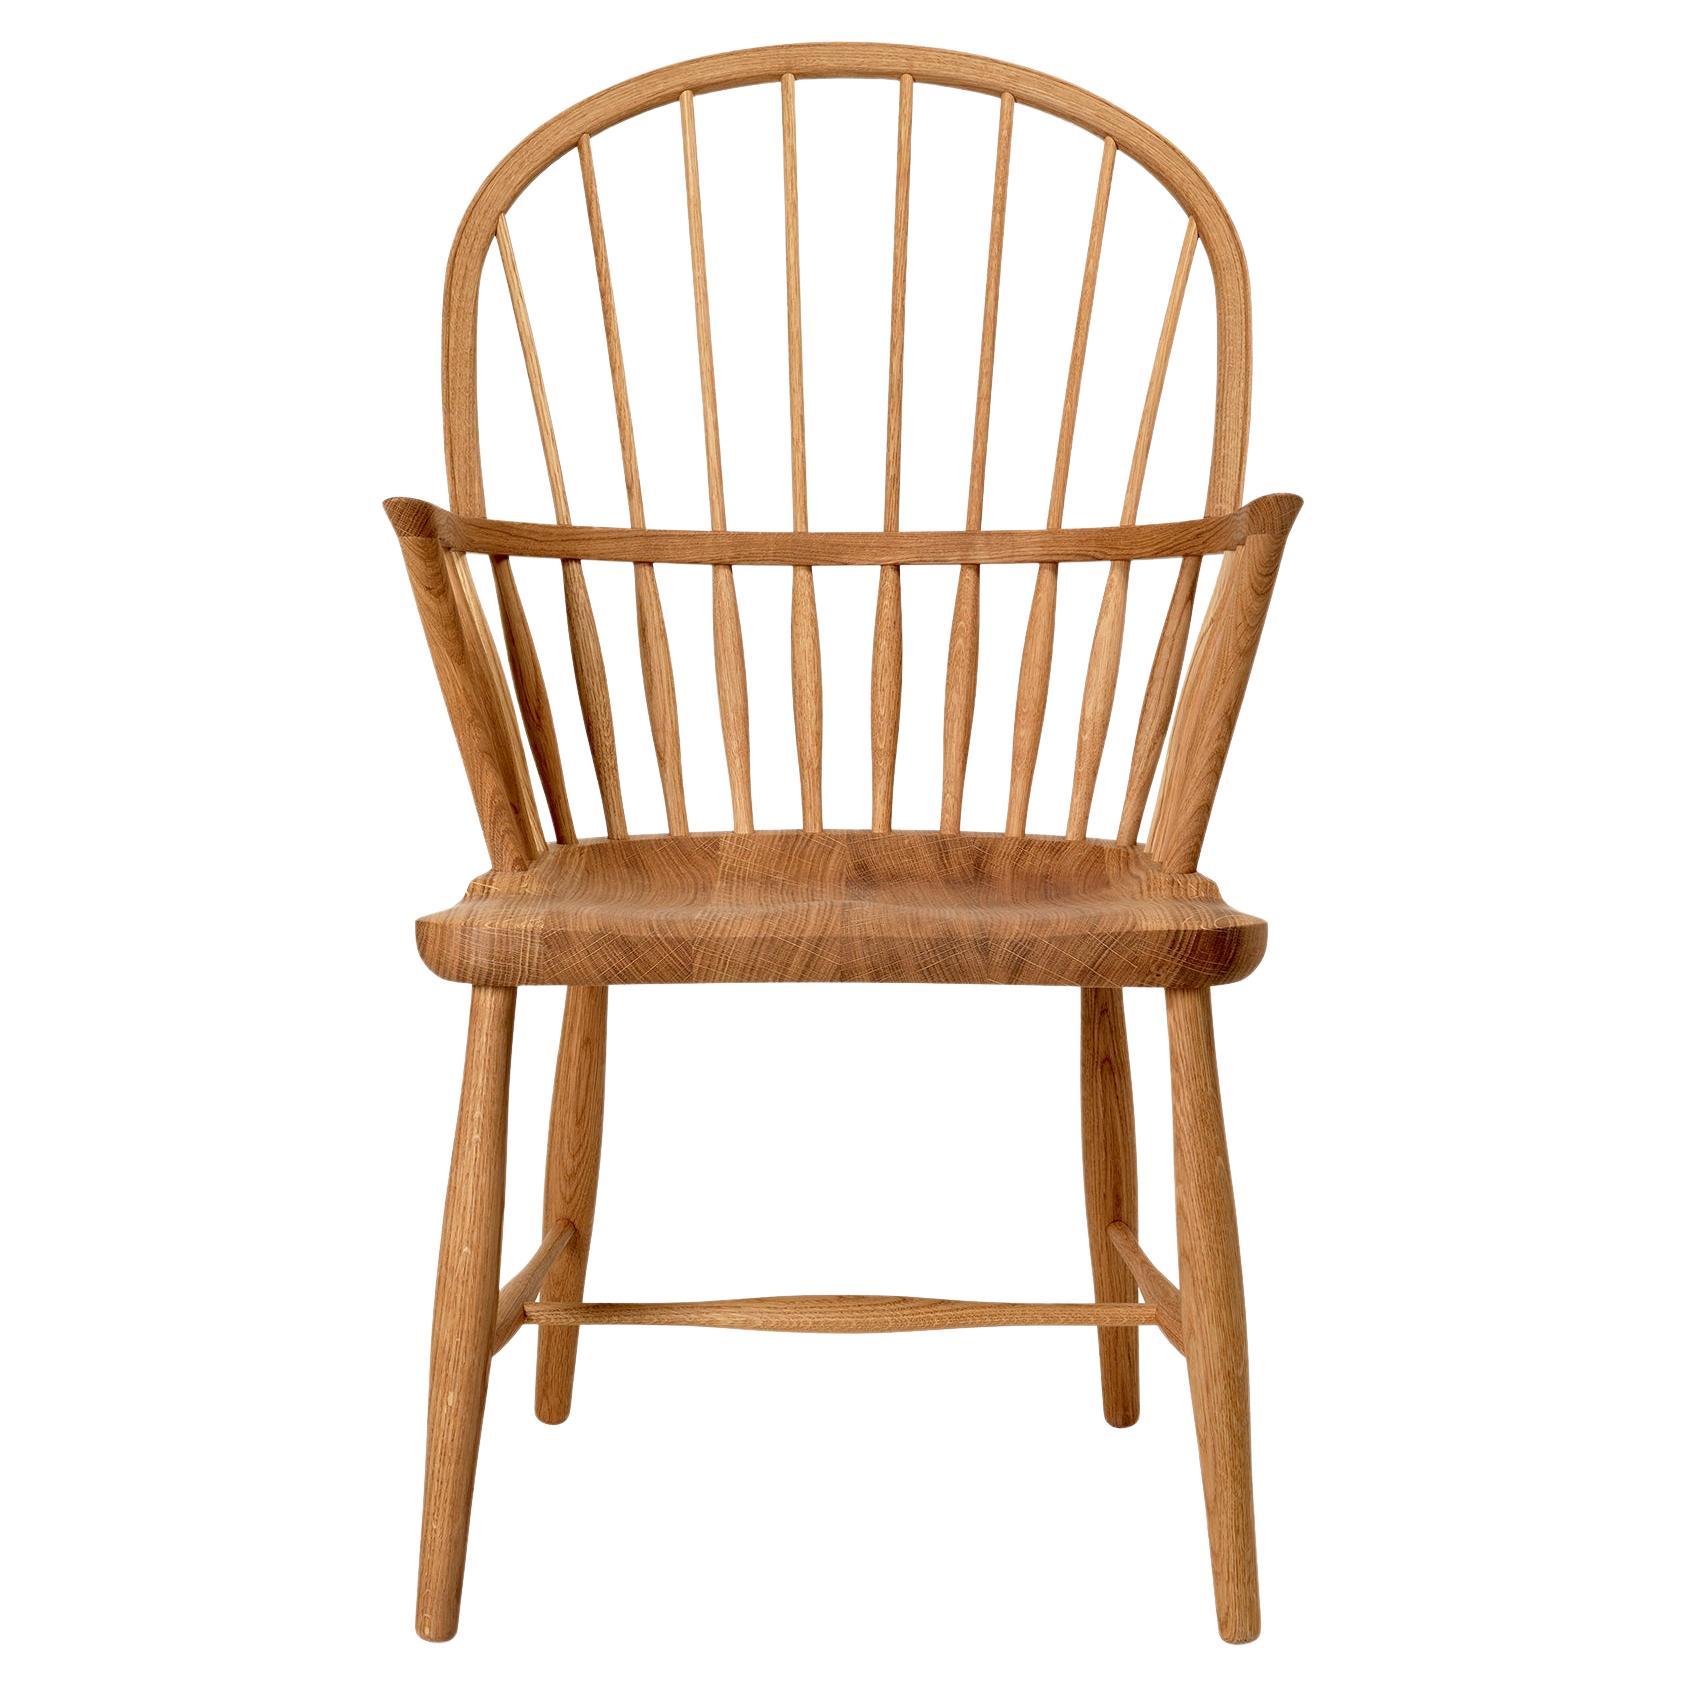 Frits Henningsen 'FH38 Windsor' Chair in Oiled Oak for Carl Hansen & Son